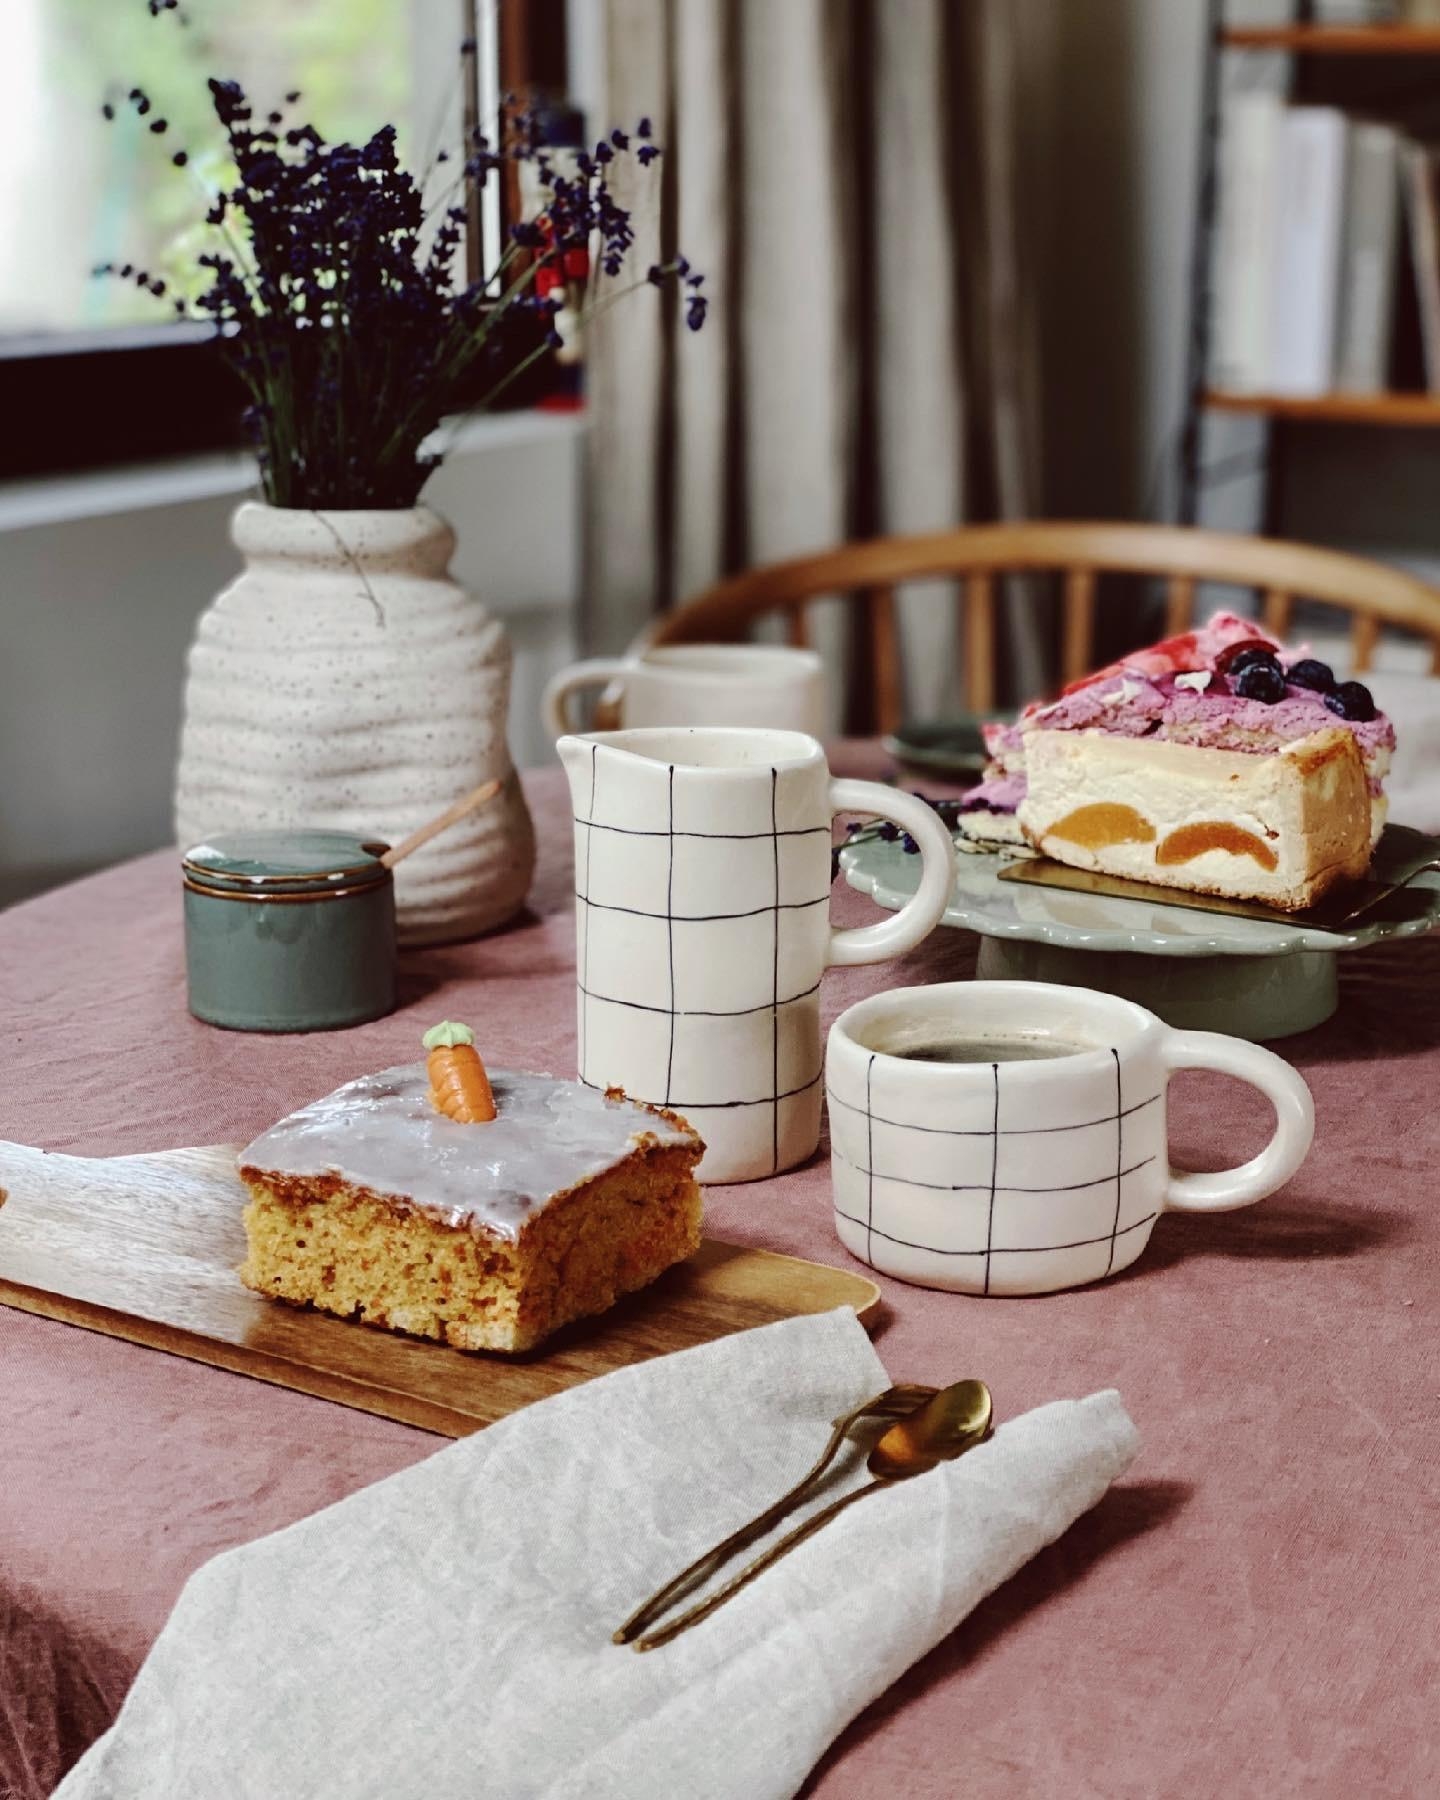 Bescheidenes Kuchenmahl; das geößte Stück ist gesichert 🤷🏻‍♀️🤤
#kuchenliebe #essplätzchen #skandi